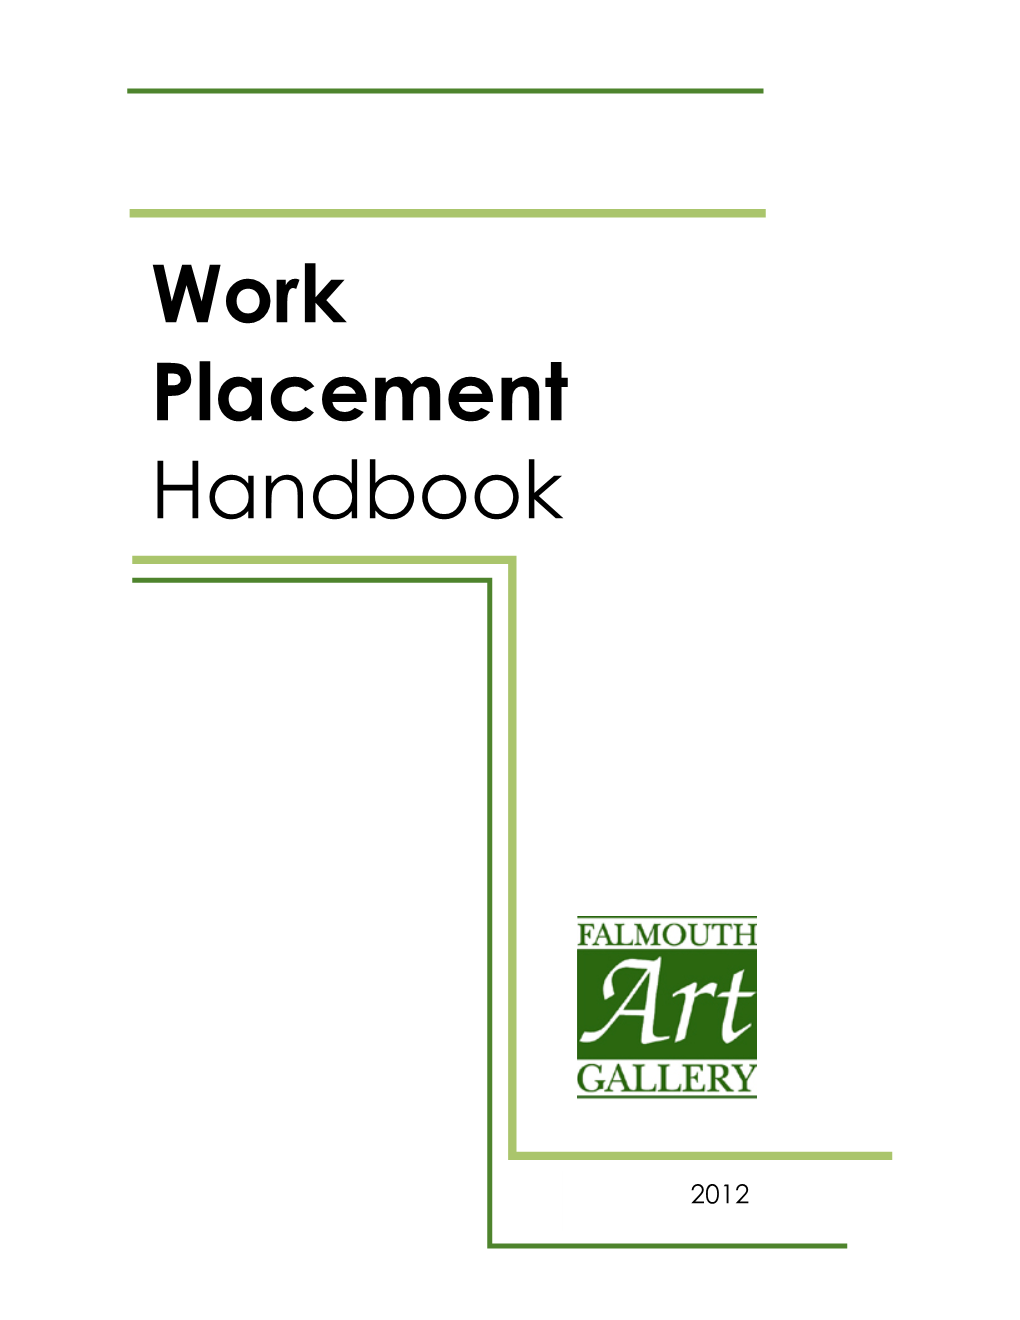 Work Placement Handbook